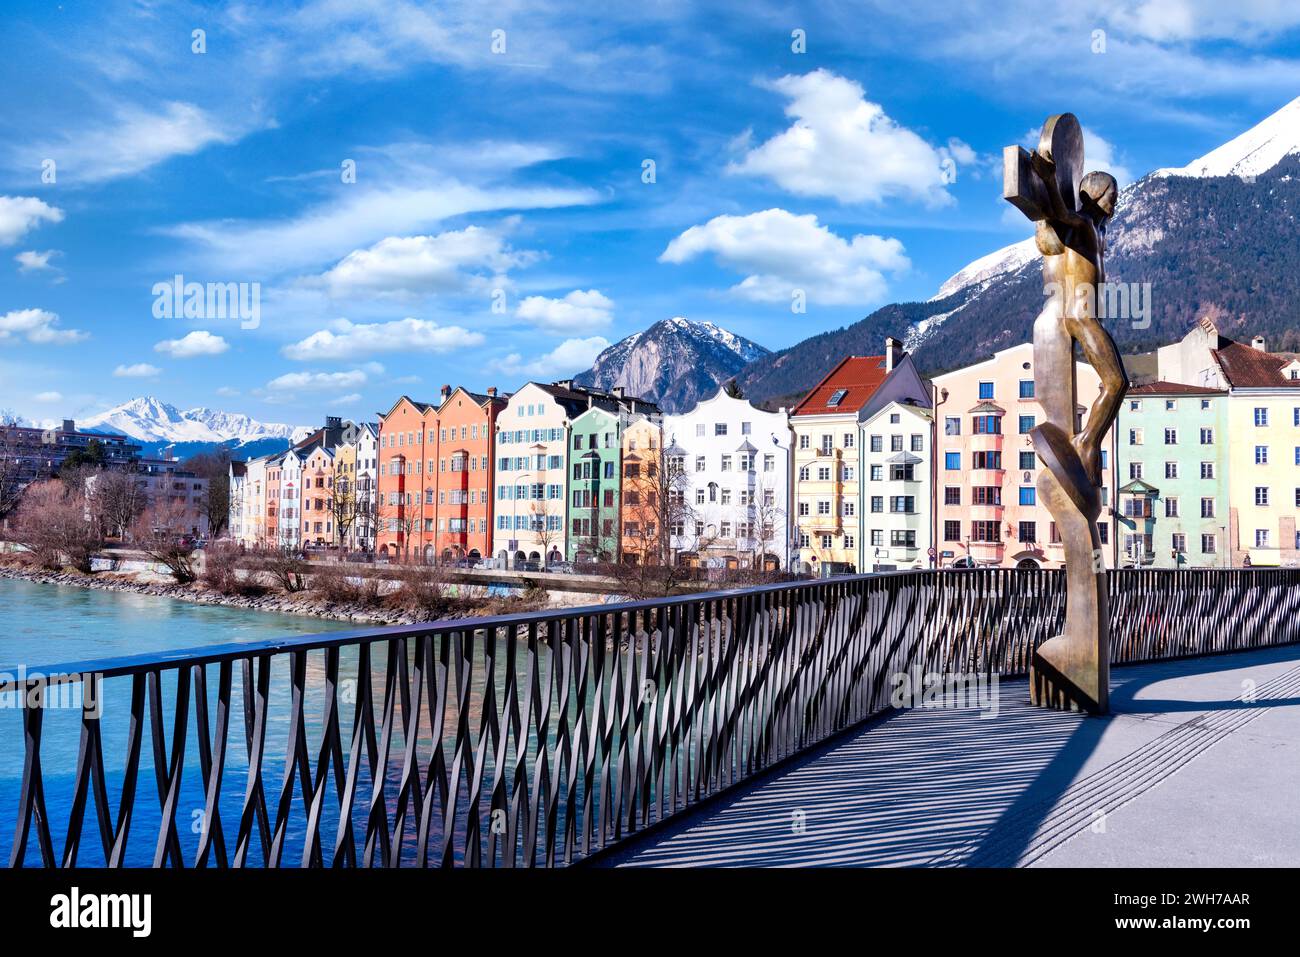 Paesaggio urbano del centro di Innsbruck con belle case, locanda sul fiume e ponte sul fiume con sculture, Alpi tiroliane, Austria, Europa Foto Stock